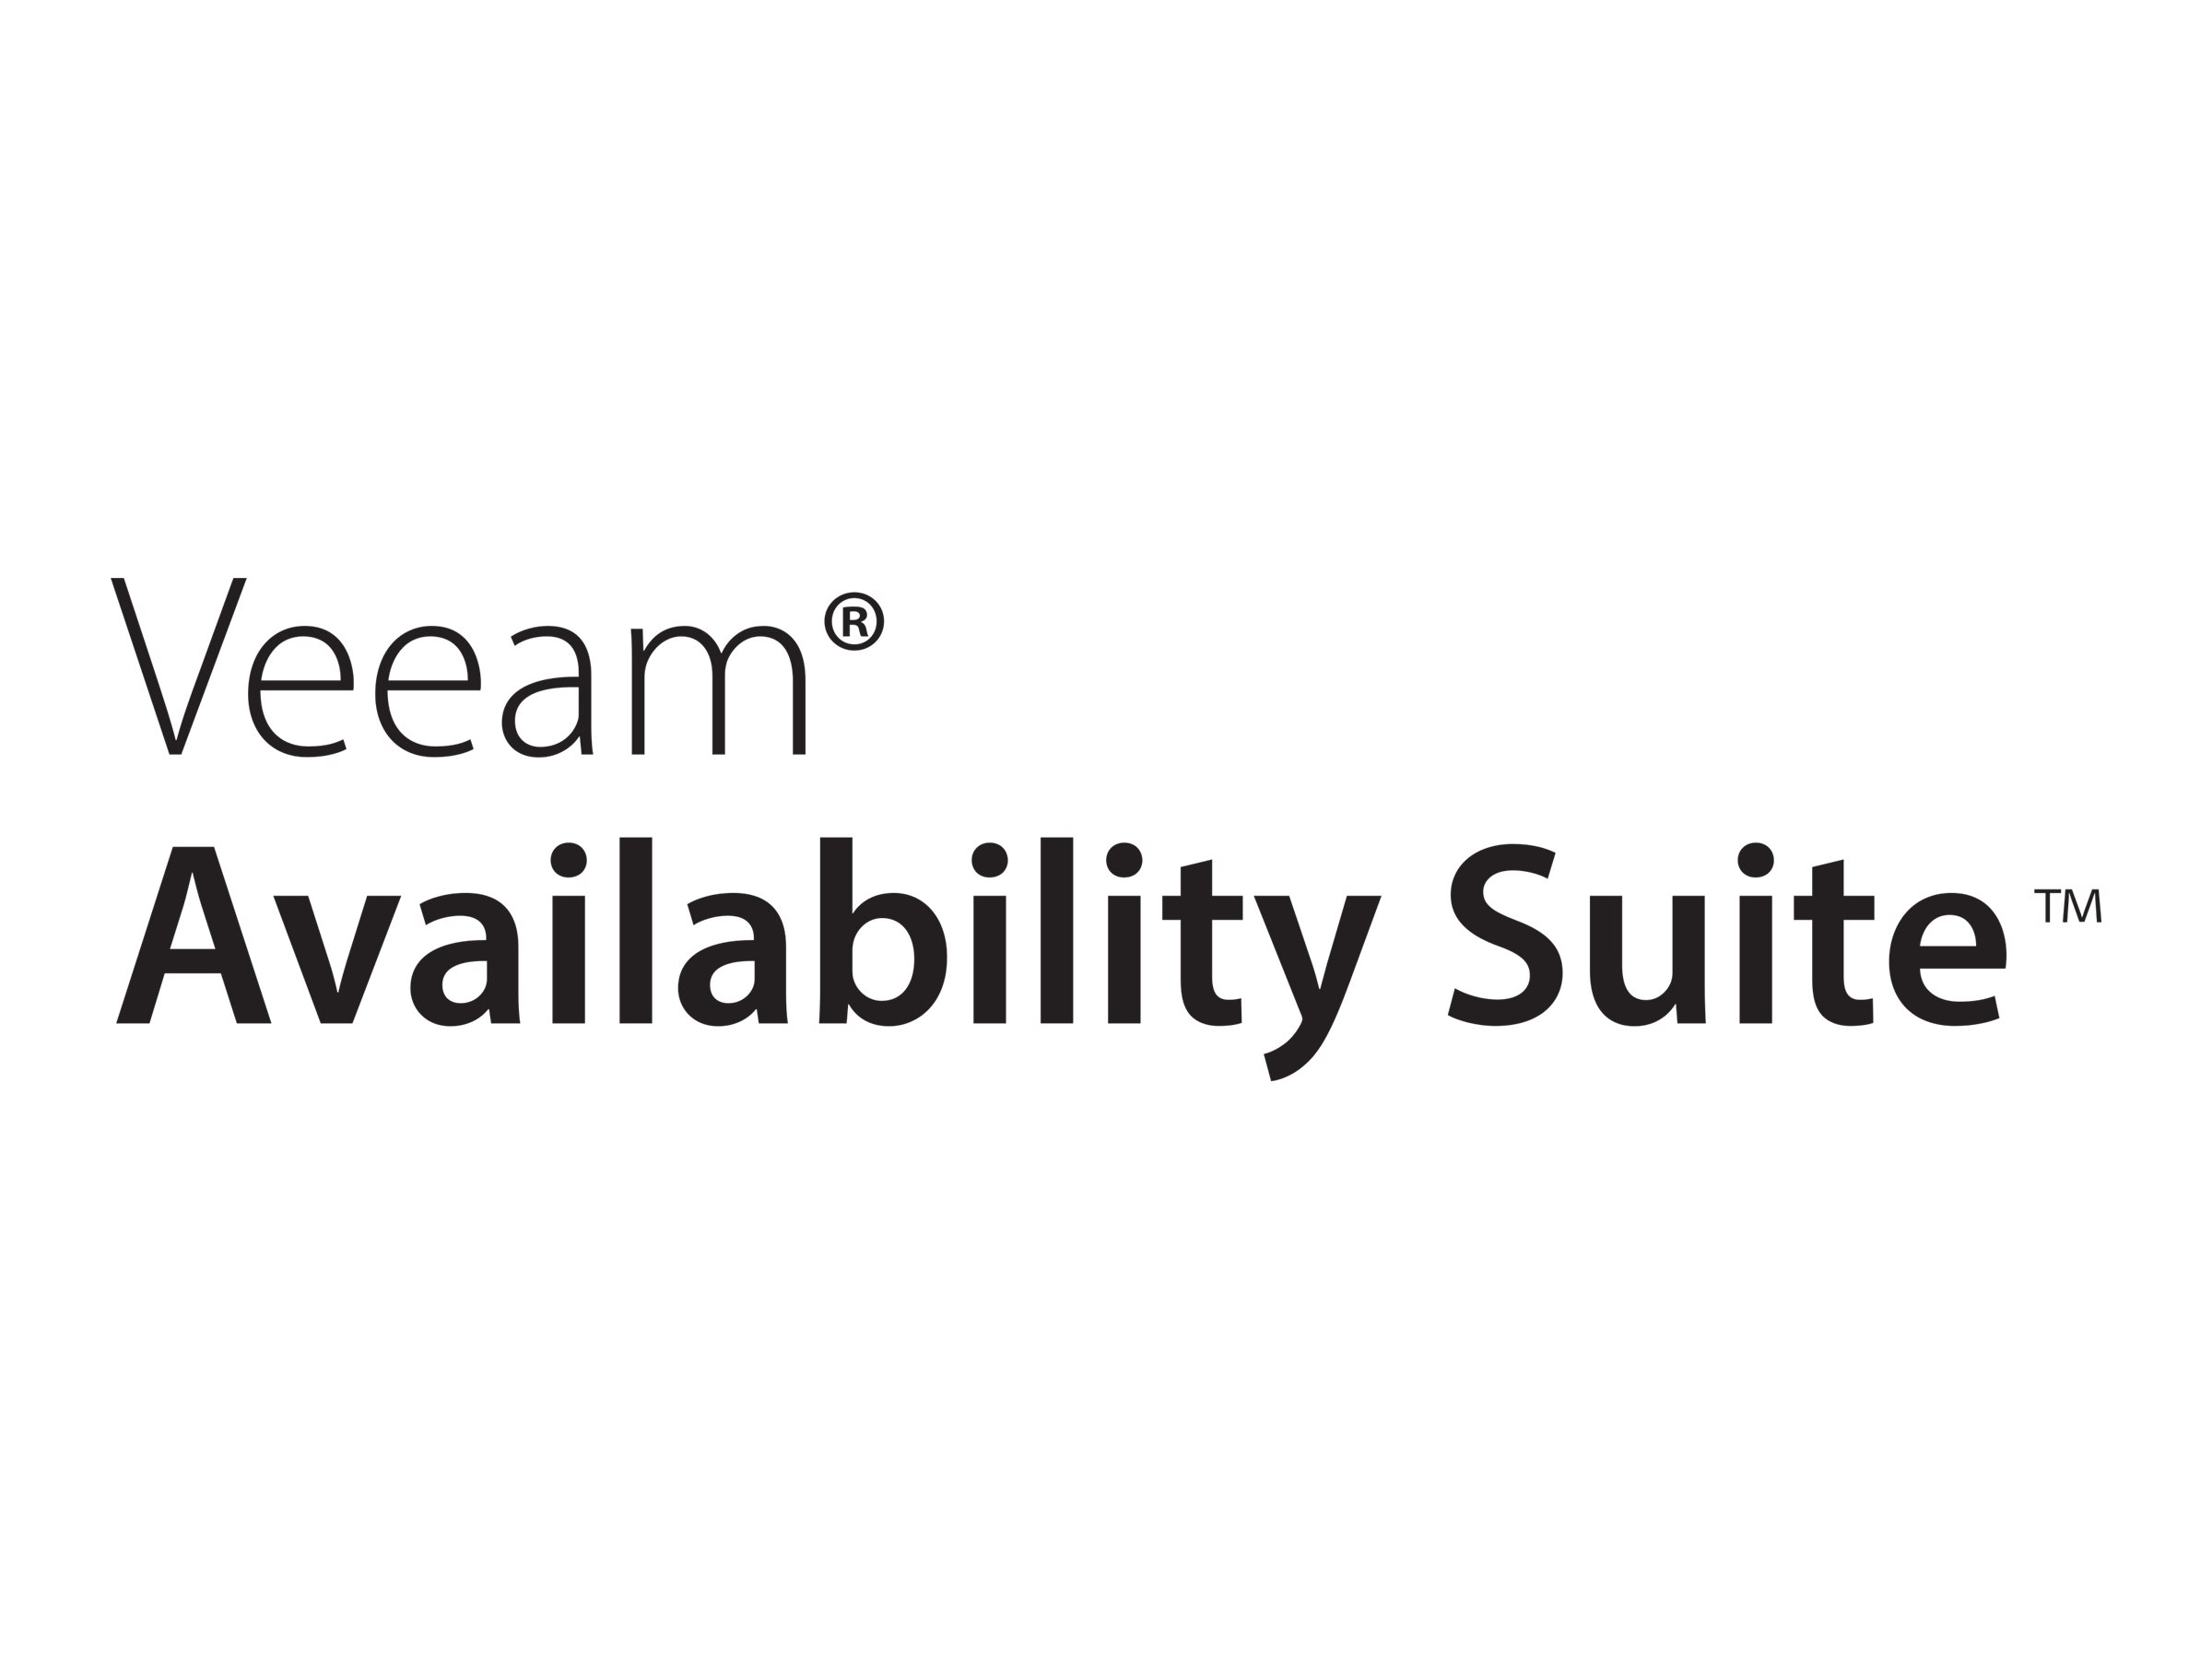 Veeam Availability Suite Enterprise for VMware - Mietvertrag (2 Jahre) - 10 virtuelle Maschinen - Upgrade von unbefristete Lizenz - vorausbezahlt - Veeam ProPartner Service Provider Program, Veeam Cloud & Service Provider Program